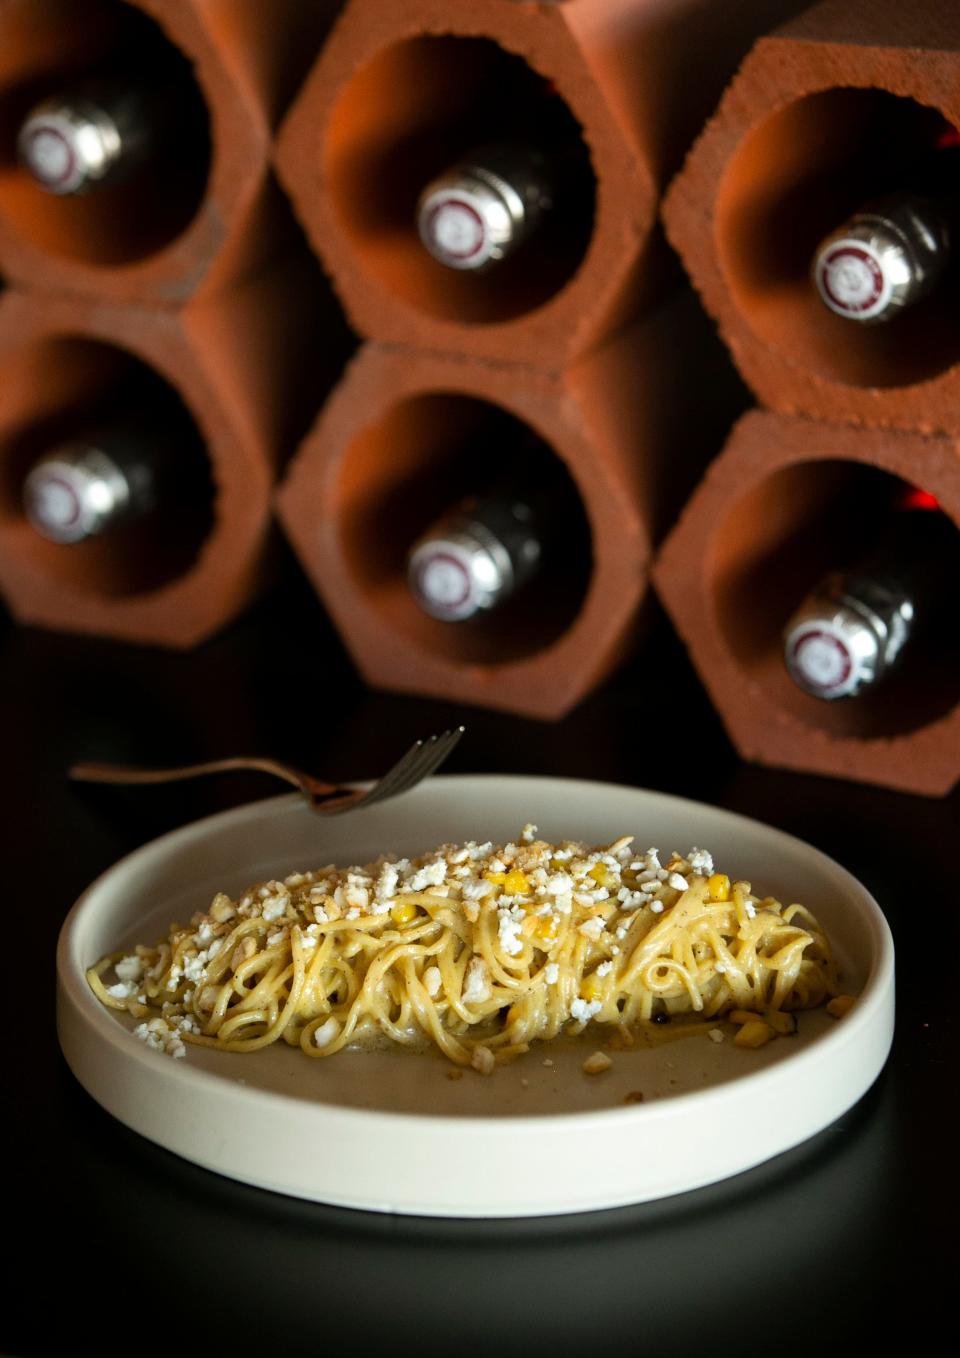 The elote pasta dish at Valentine restaurant in Phoenix.